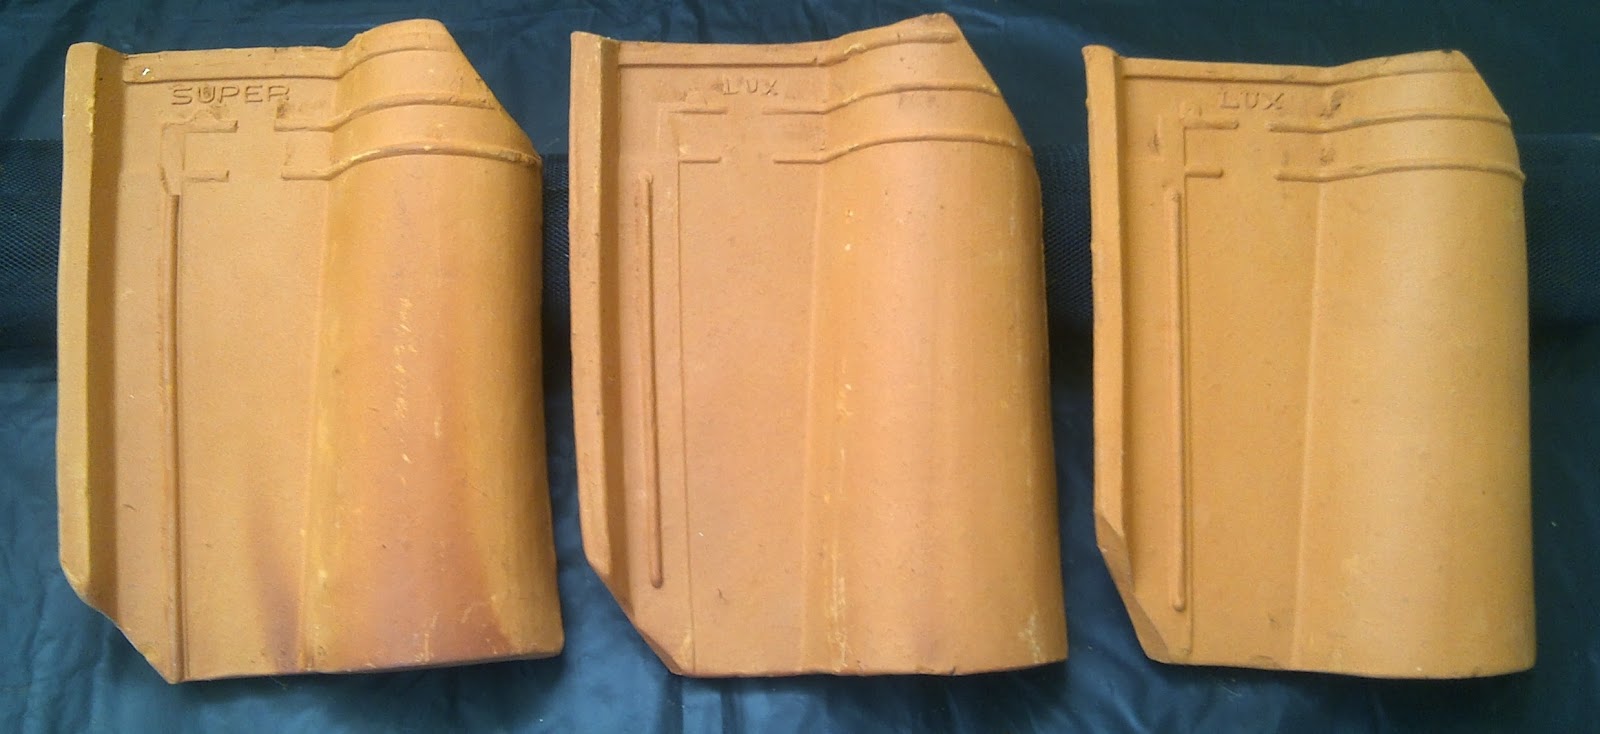 Genteng Jatiwangi Morando Glasur Keramik: Keunggulan 